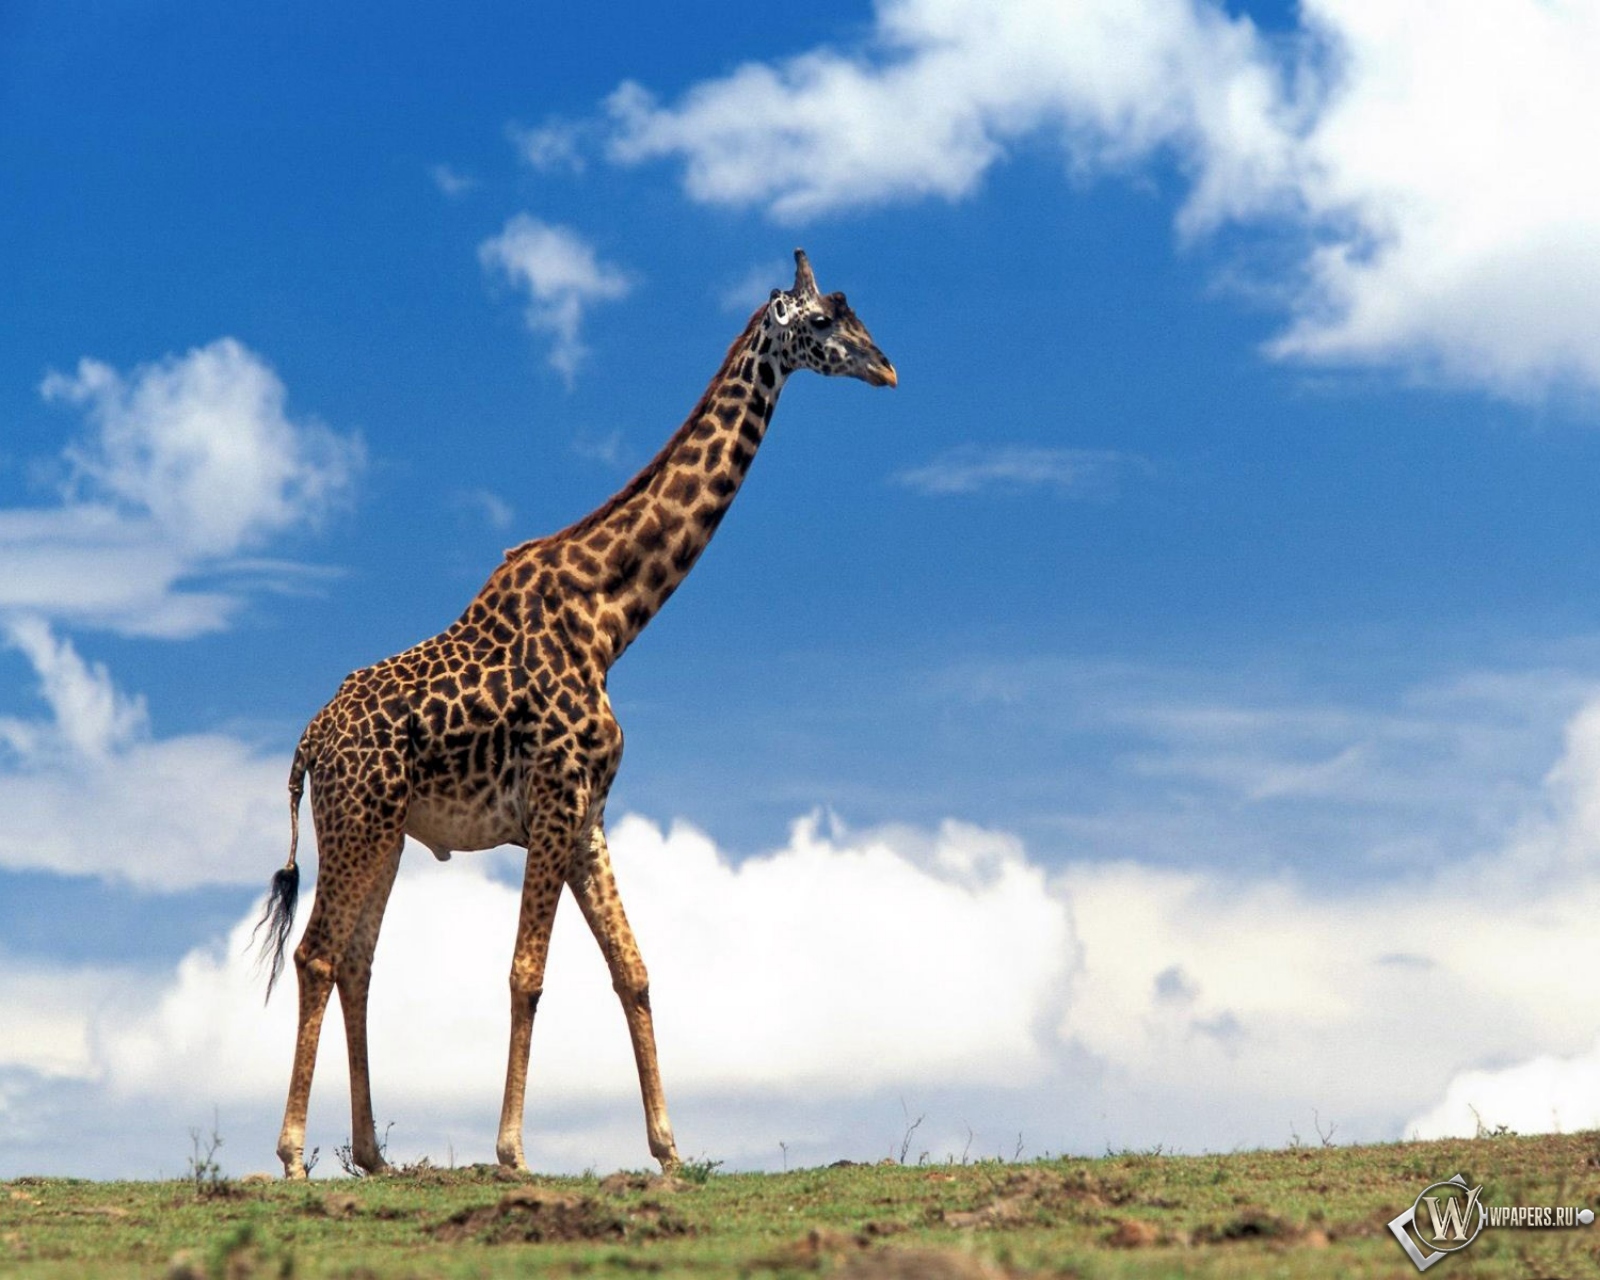 Скачать обои Жираф (Природа, Небо, Жираф) для рабочего стола 1600х1280  (5:4) бесплатно, Фото Жираф Природа, Небо, Жираф на рабочий стол. |  WPAPERS.RU (Wallpapers).